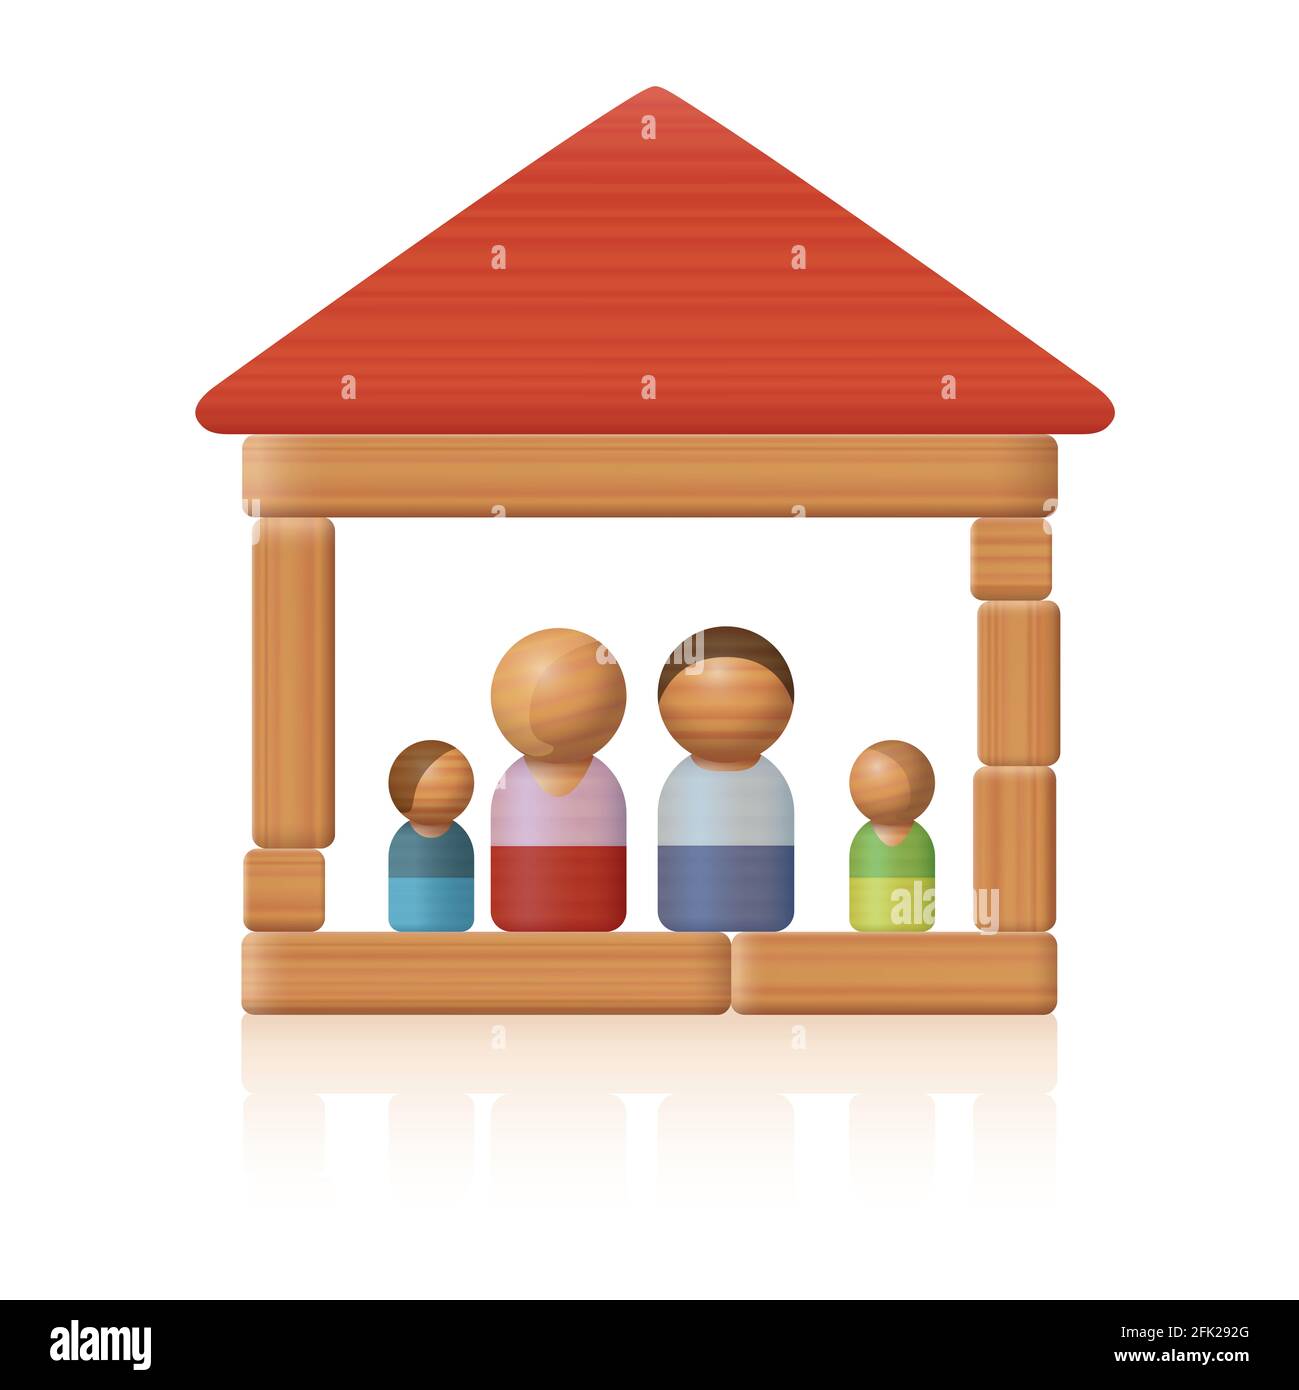 Typische Spielzeugfamilie in ihrem einfachen Holzspielzeugblockhaus - Symbol für Einfachheit in Bezug auf einfaches Wohnen oder bezahlbares Wohnen. Stockfoto